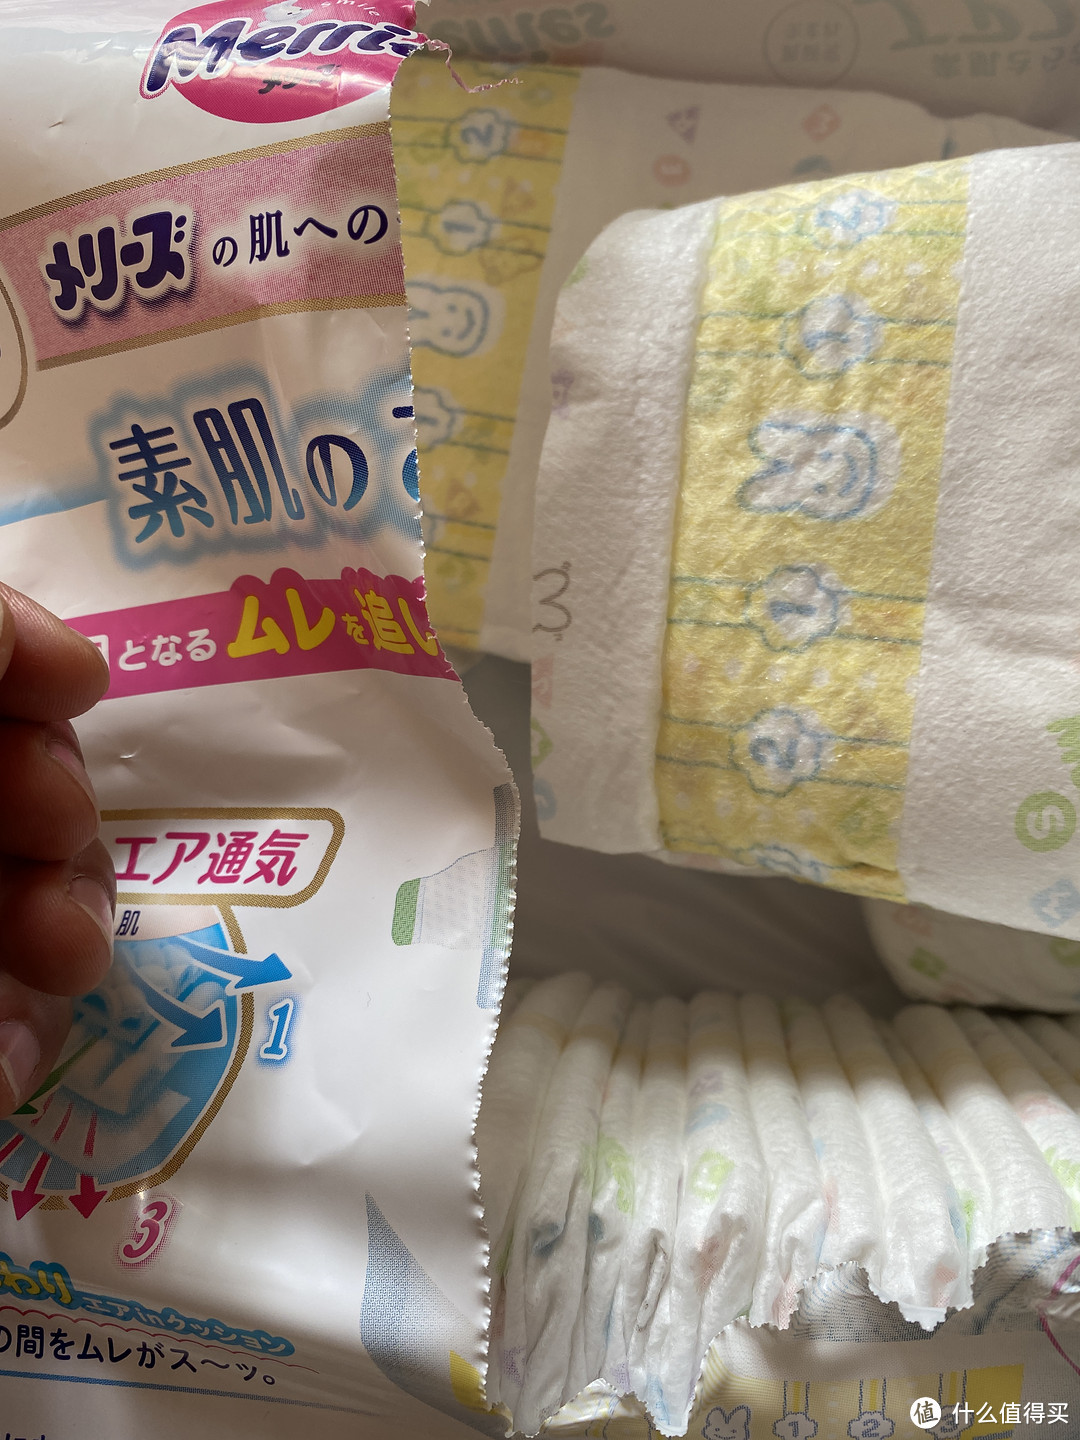 这是日本花王的包装开口